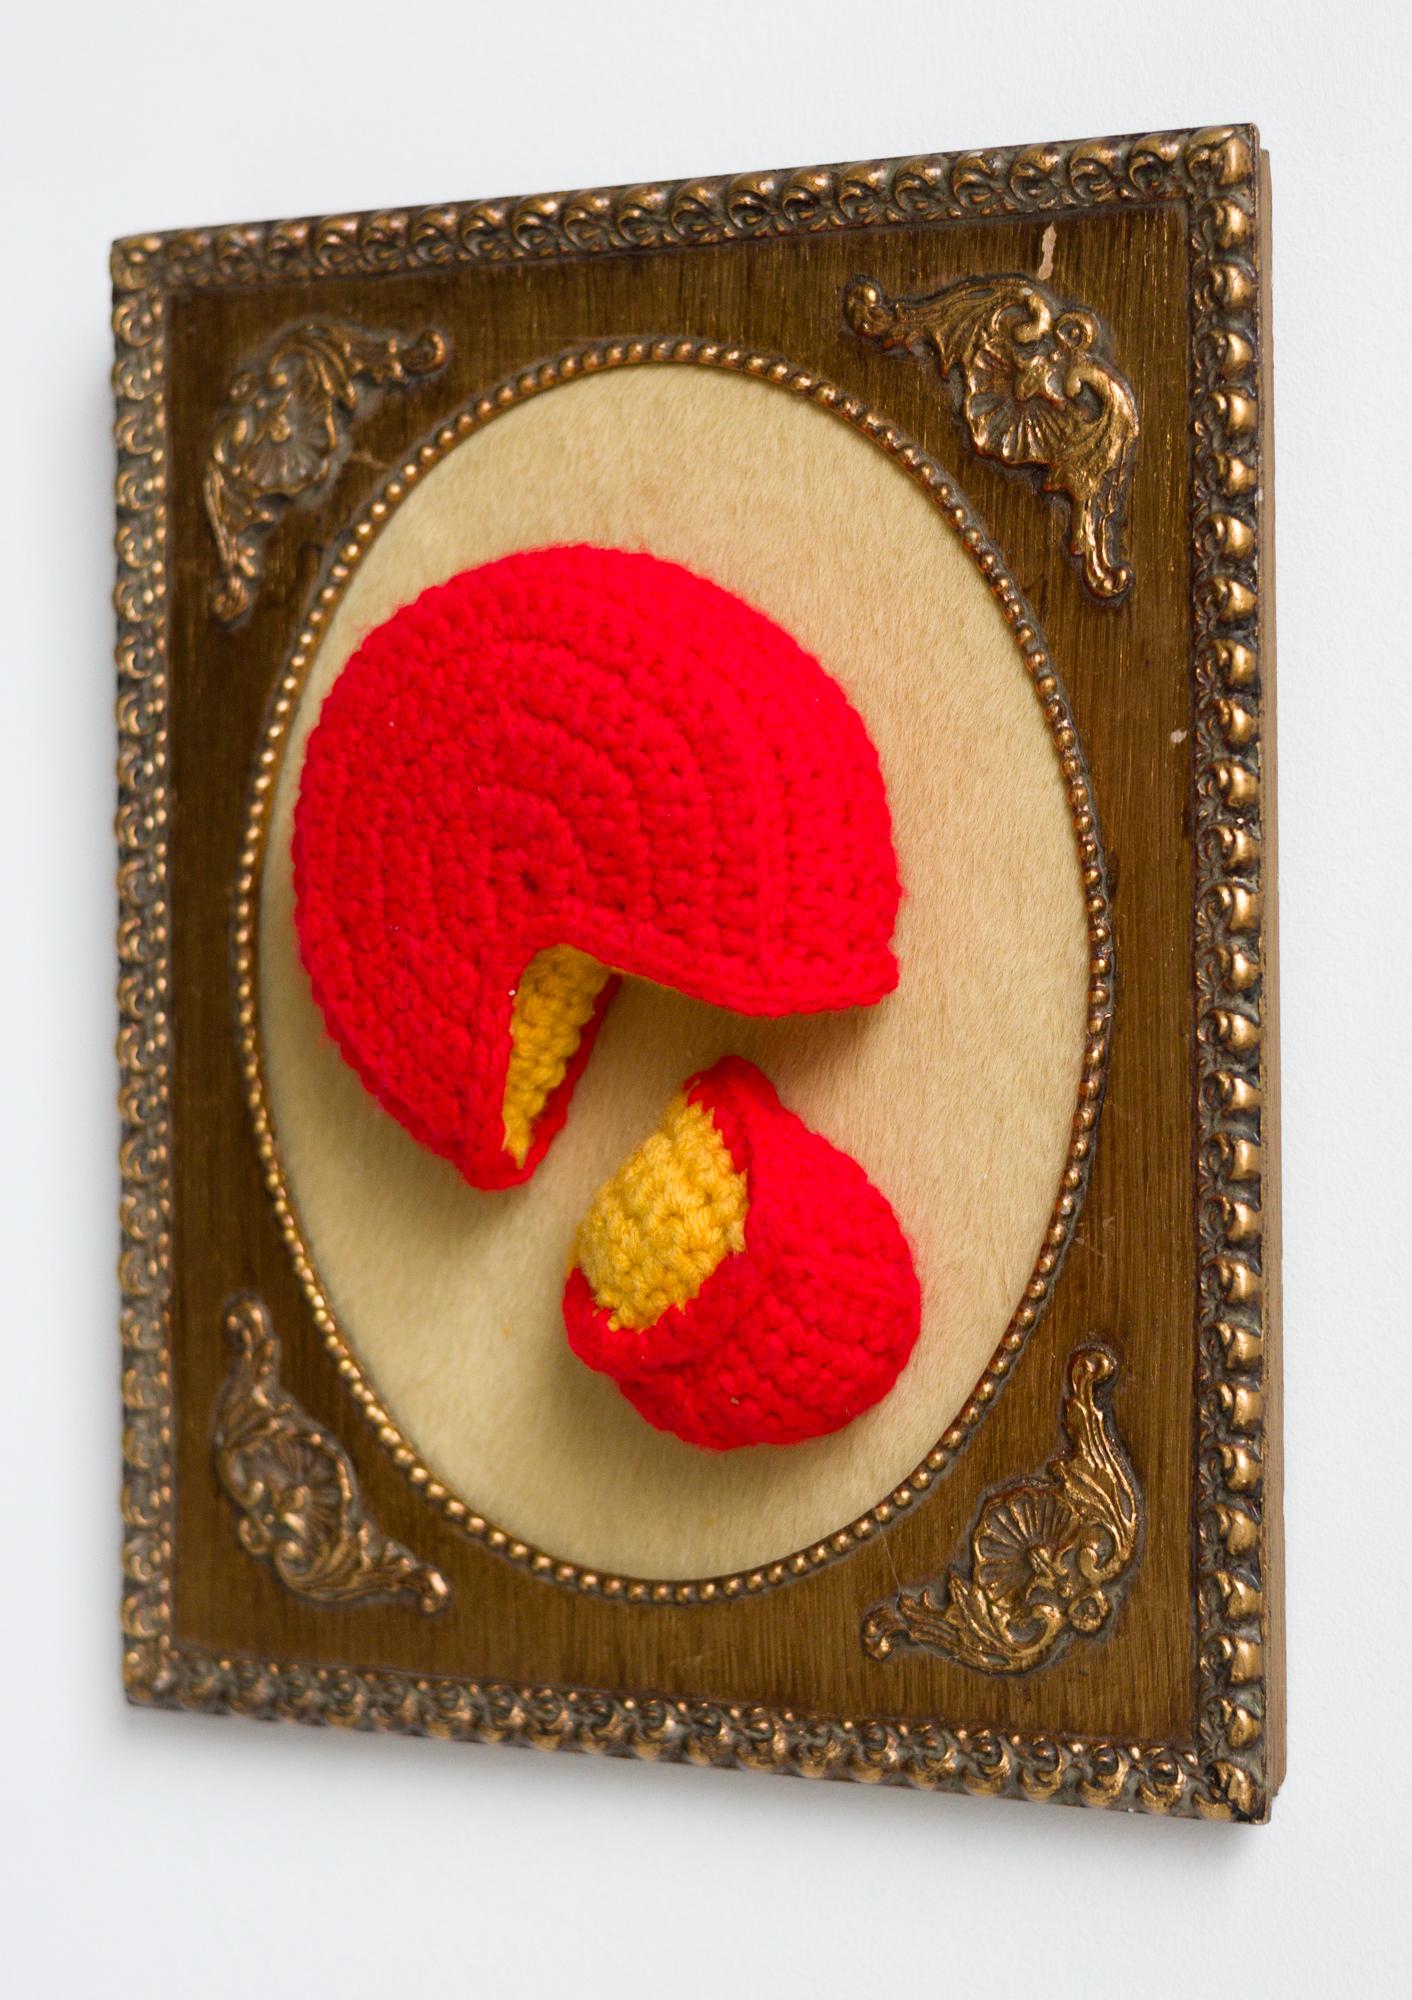 « Gouda Cheese », alimentation, textiles, acrylique au crochet dans un cadre vintage - Contemporain Art par Nicole Nikolich, Lace in the Moon